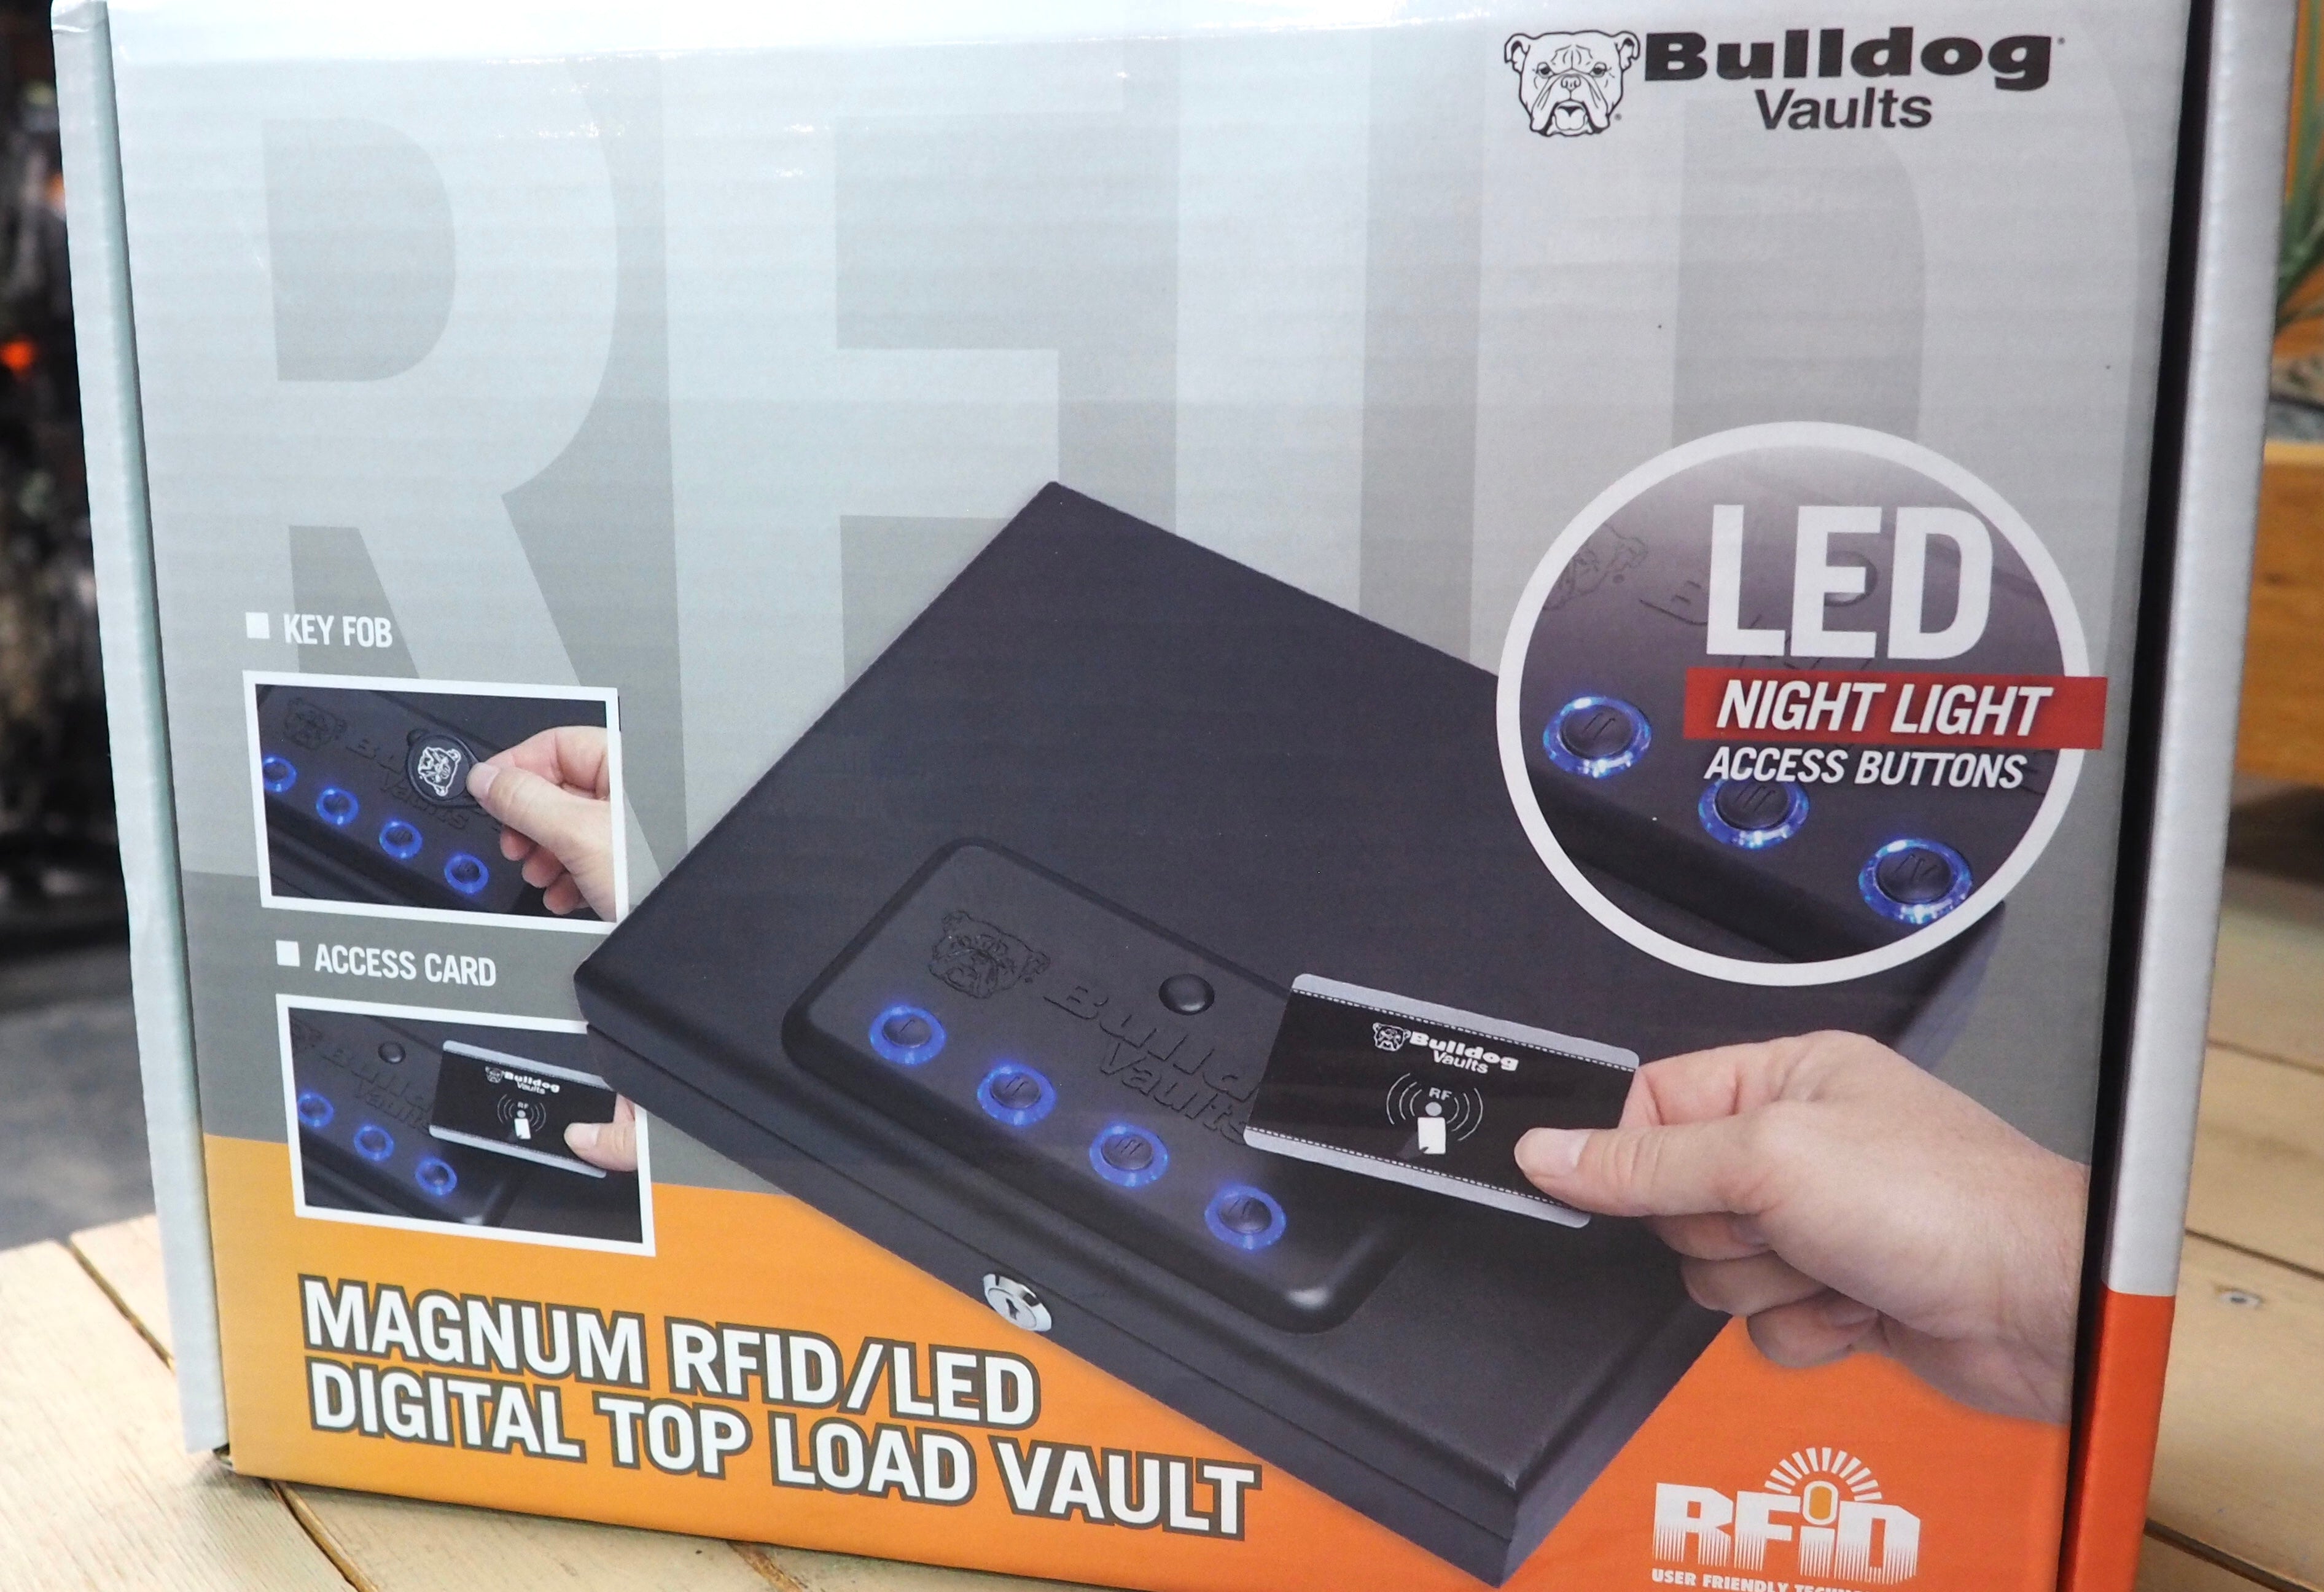 Magnum RFID/LED Digital Top Load Vault